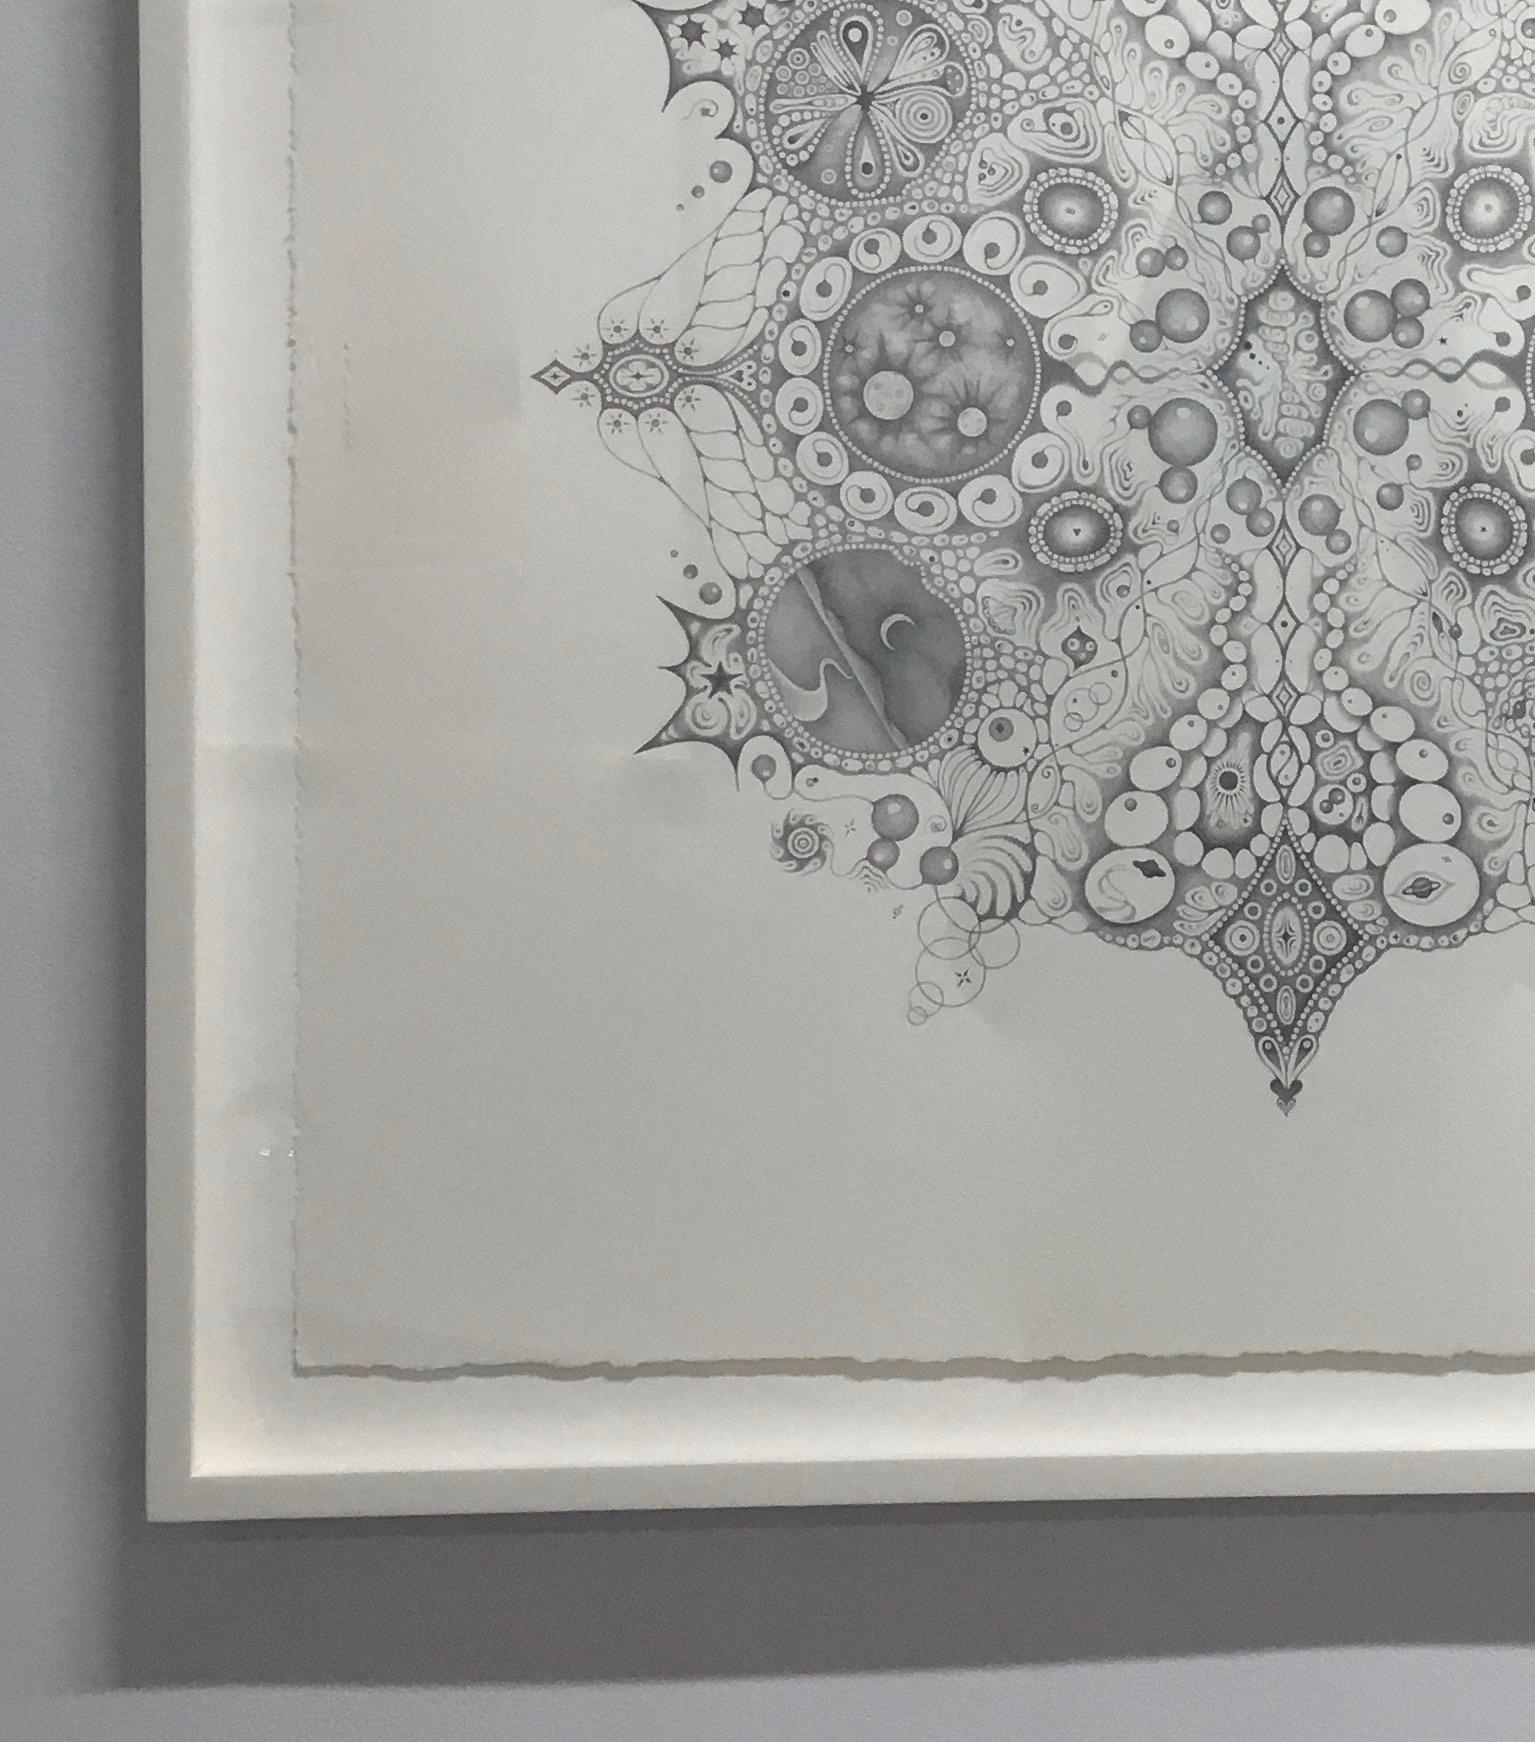 Schneeflocken 125 Einssein, Planeten, Mondsichel, Muster Mandala Bleistiftzeichnung (Grau), Abstract Drawing, von Michiyo Ihara